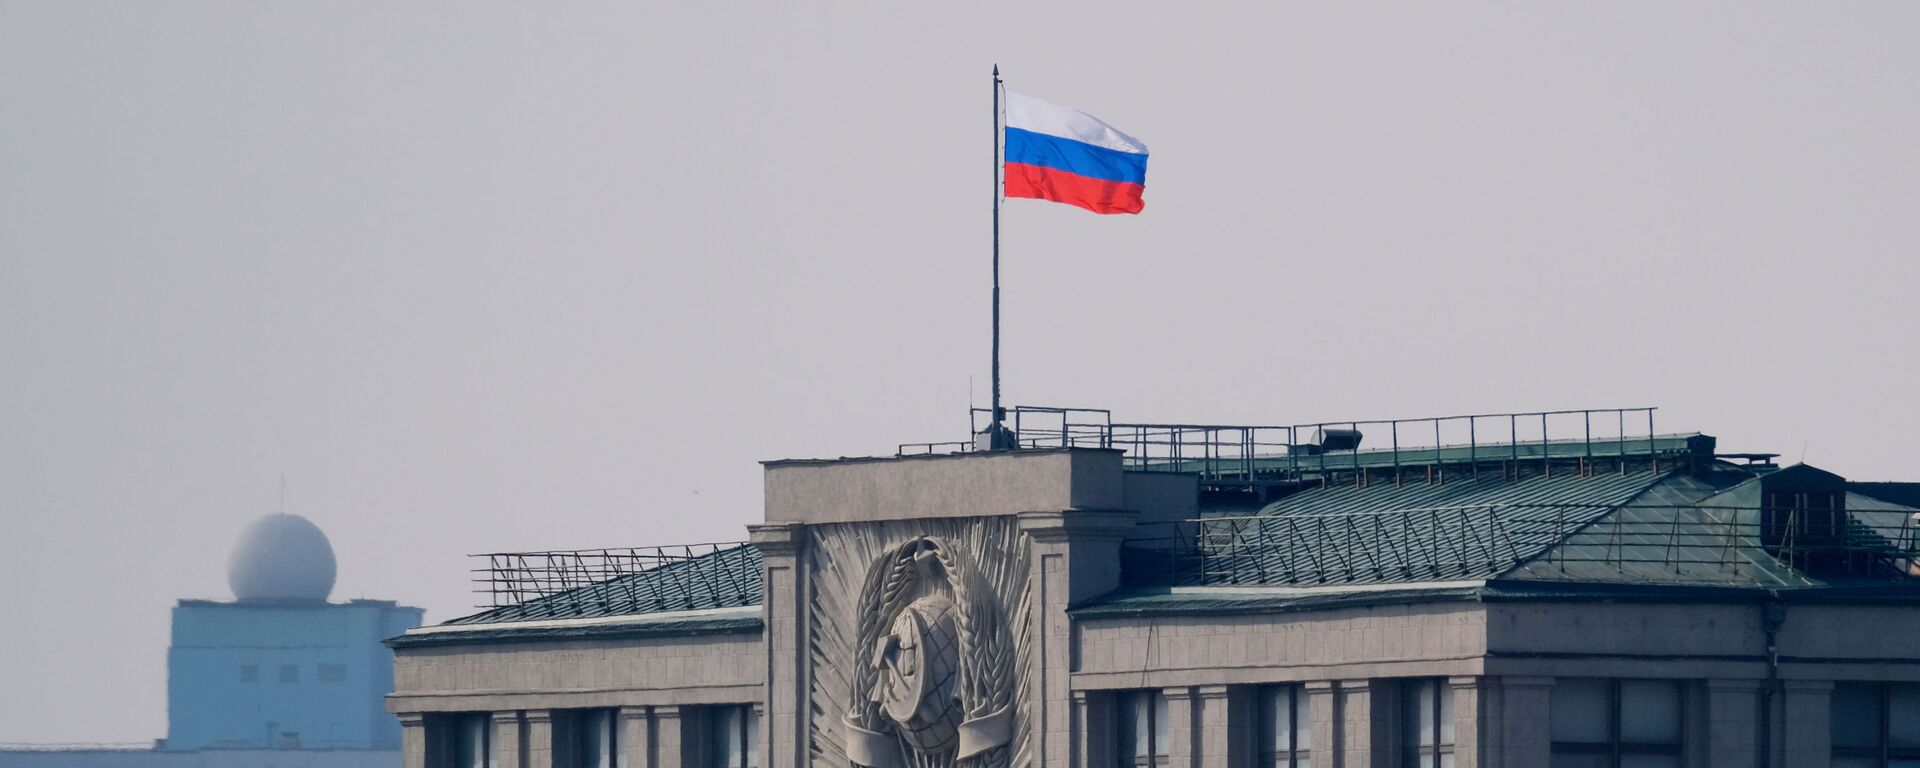 Флаг на здании Государственной Думы РФ на улице Охотный ряд в Москве - Sputnik Lietuva, 1920, 23.05.2021